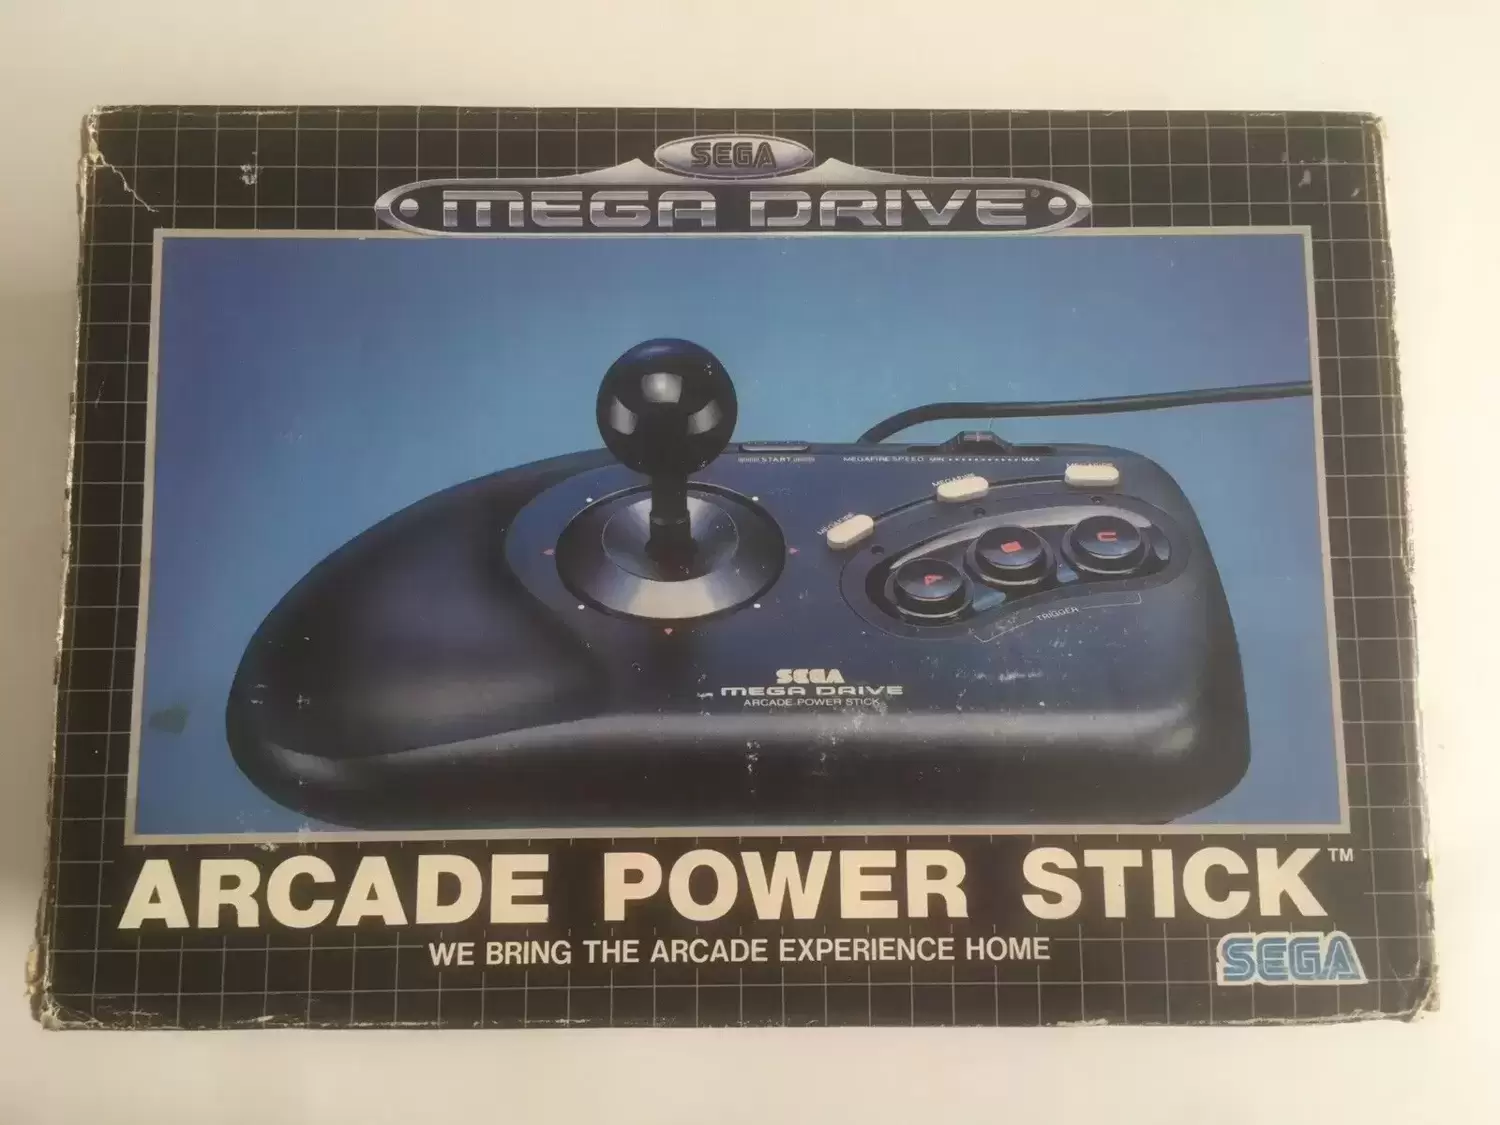 Arcade Stick - SEGA Arcade Power Stick